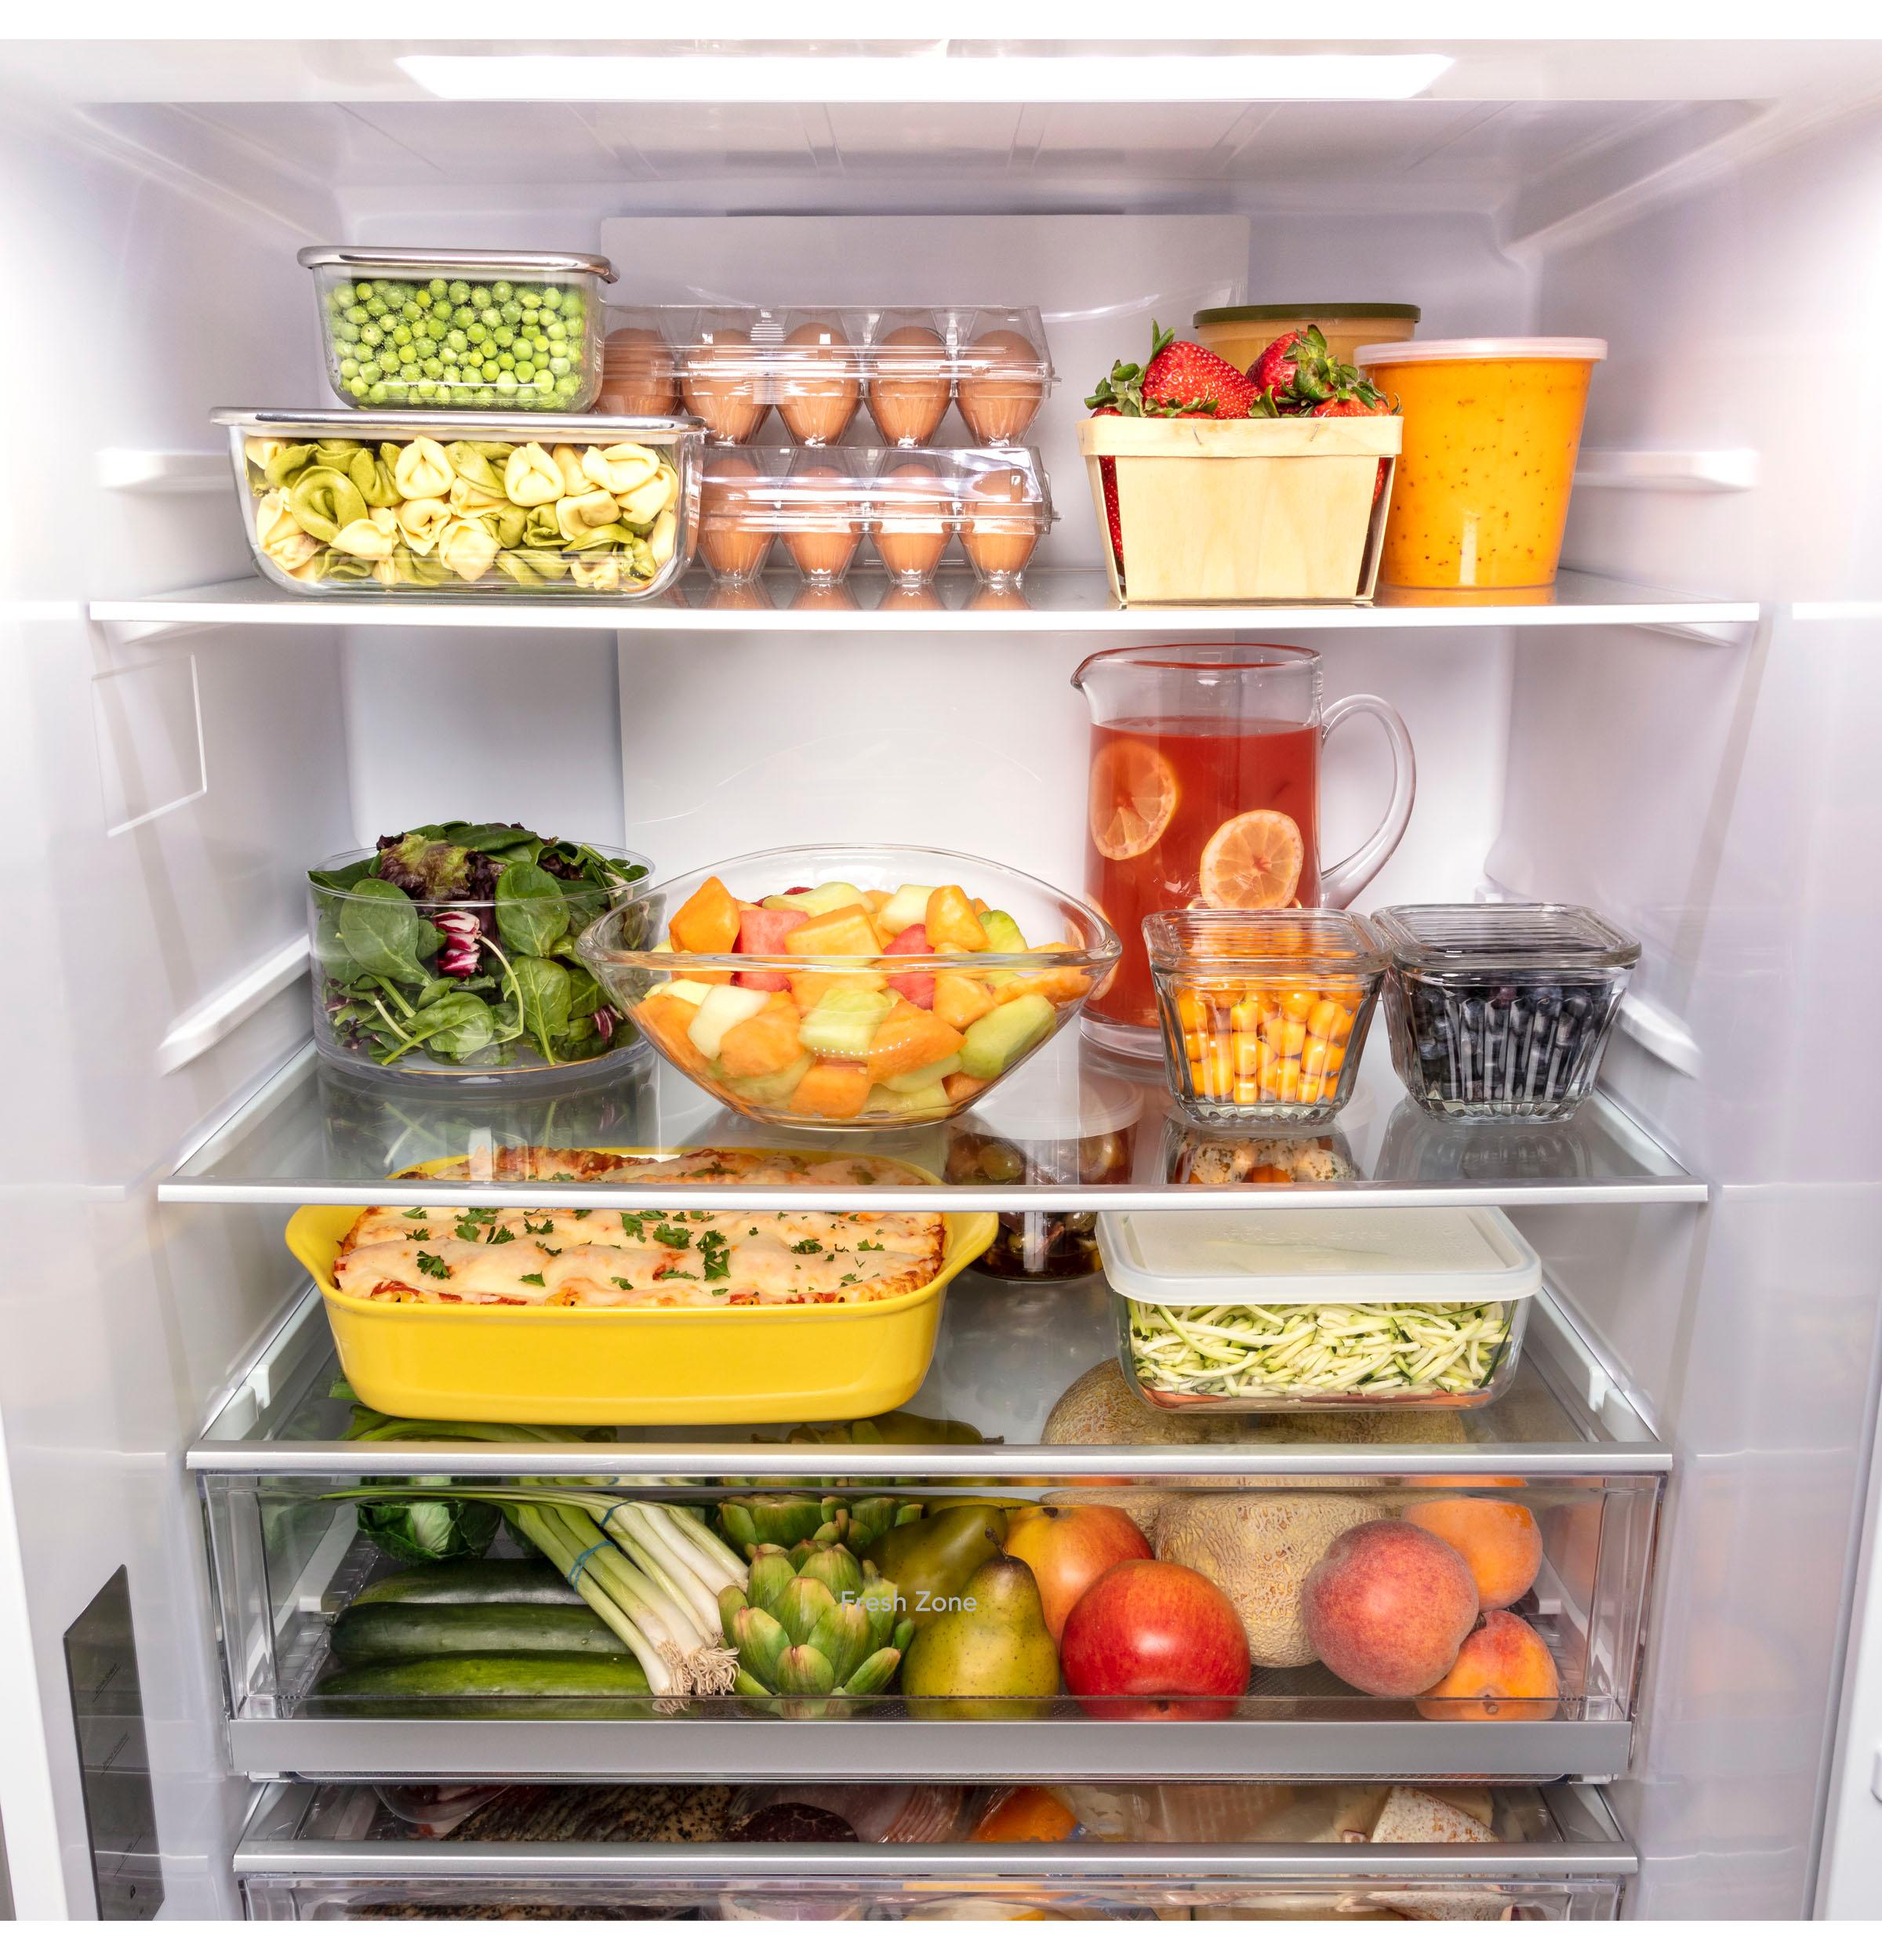 GE® ENERGY STAR® 17.7 Cu. Ft. Counter-Depth Bottom-Freezer Refrigerator